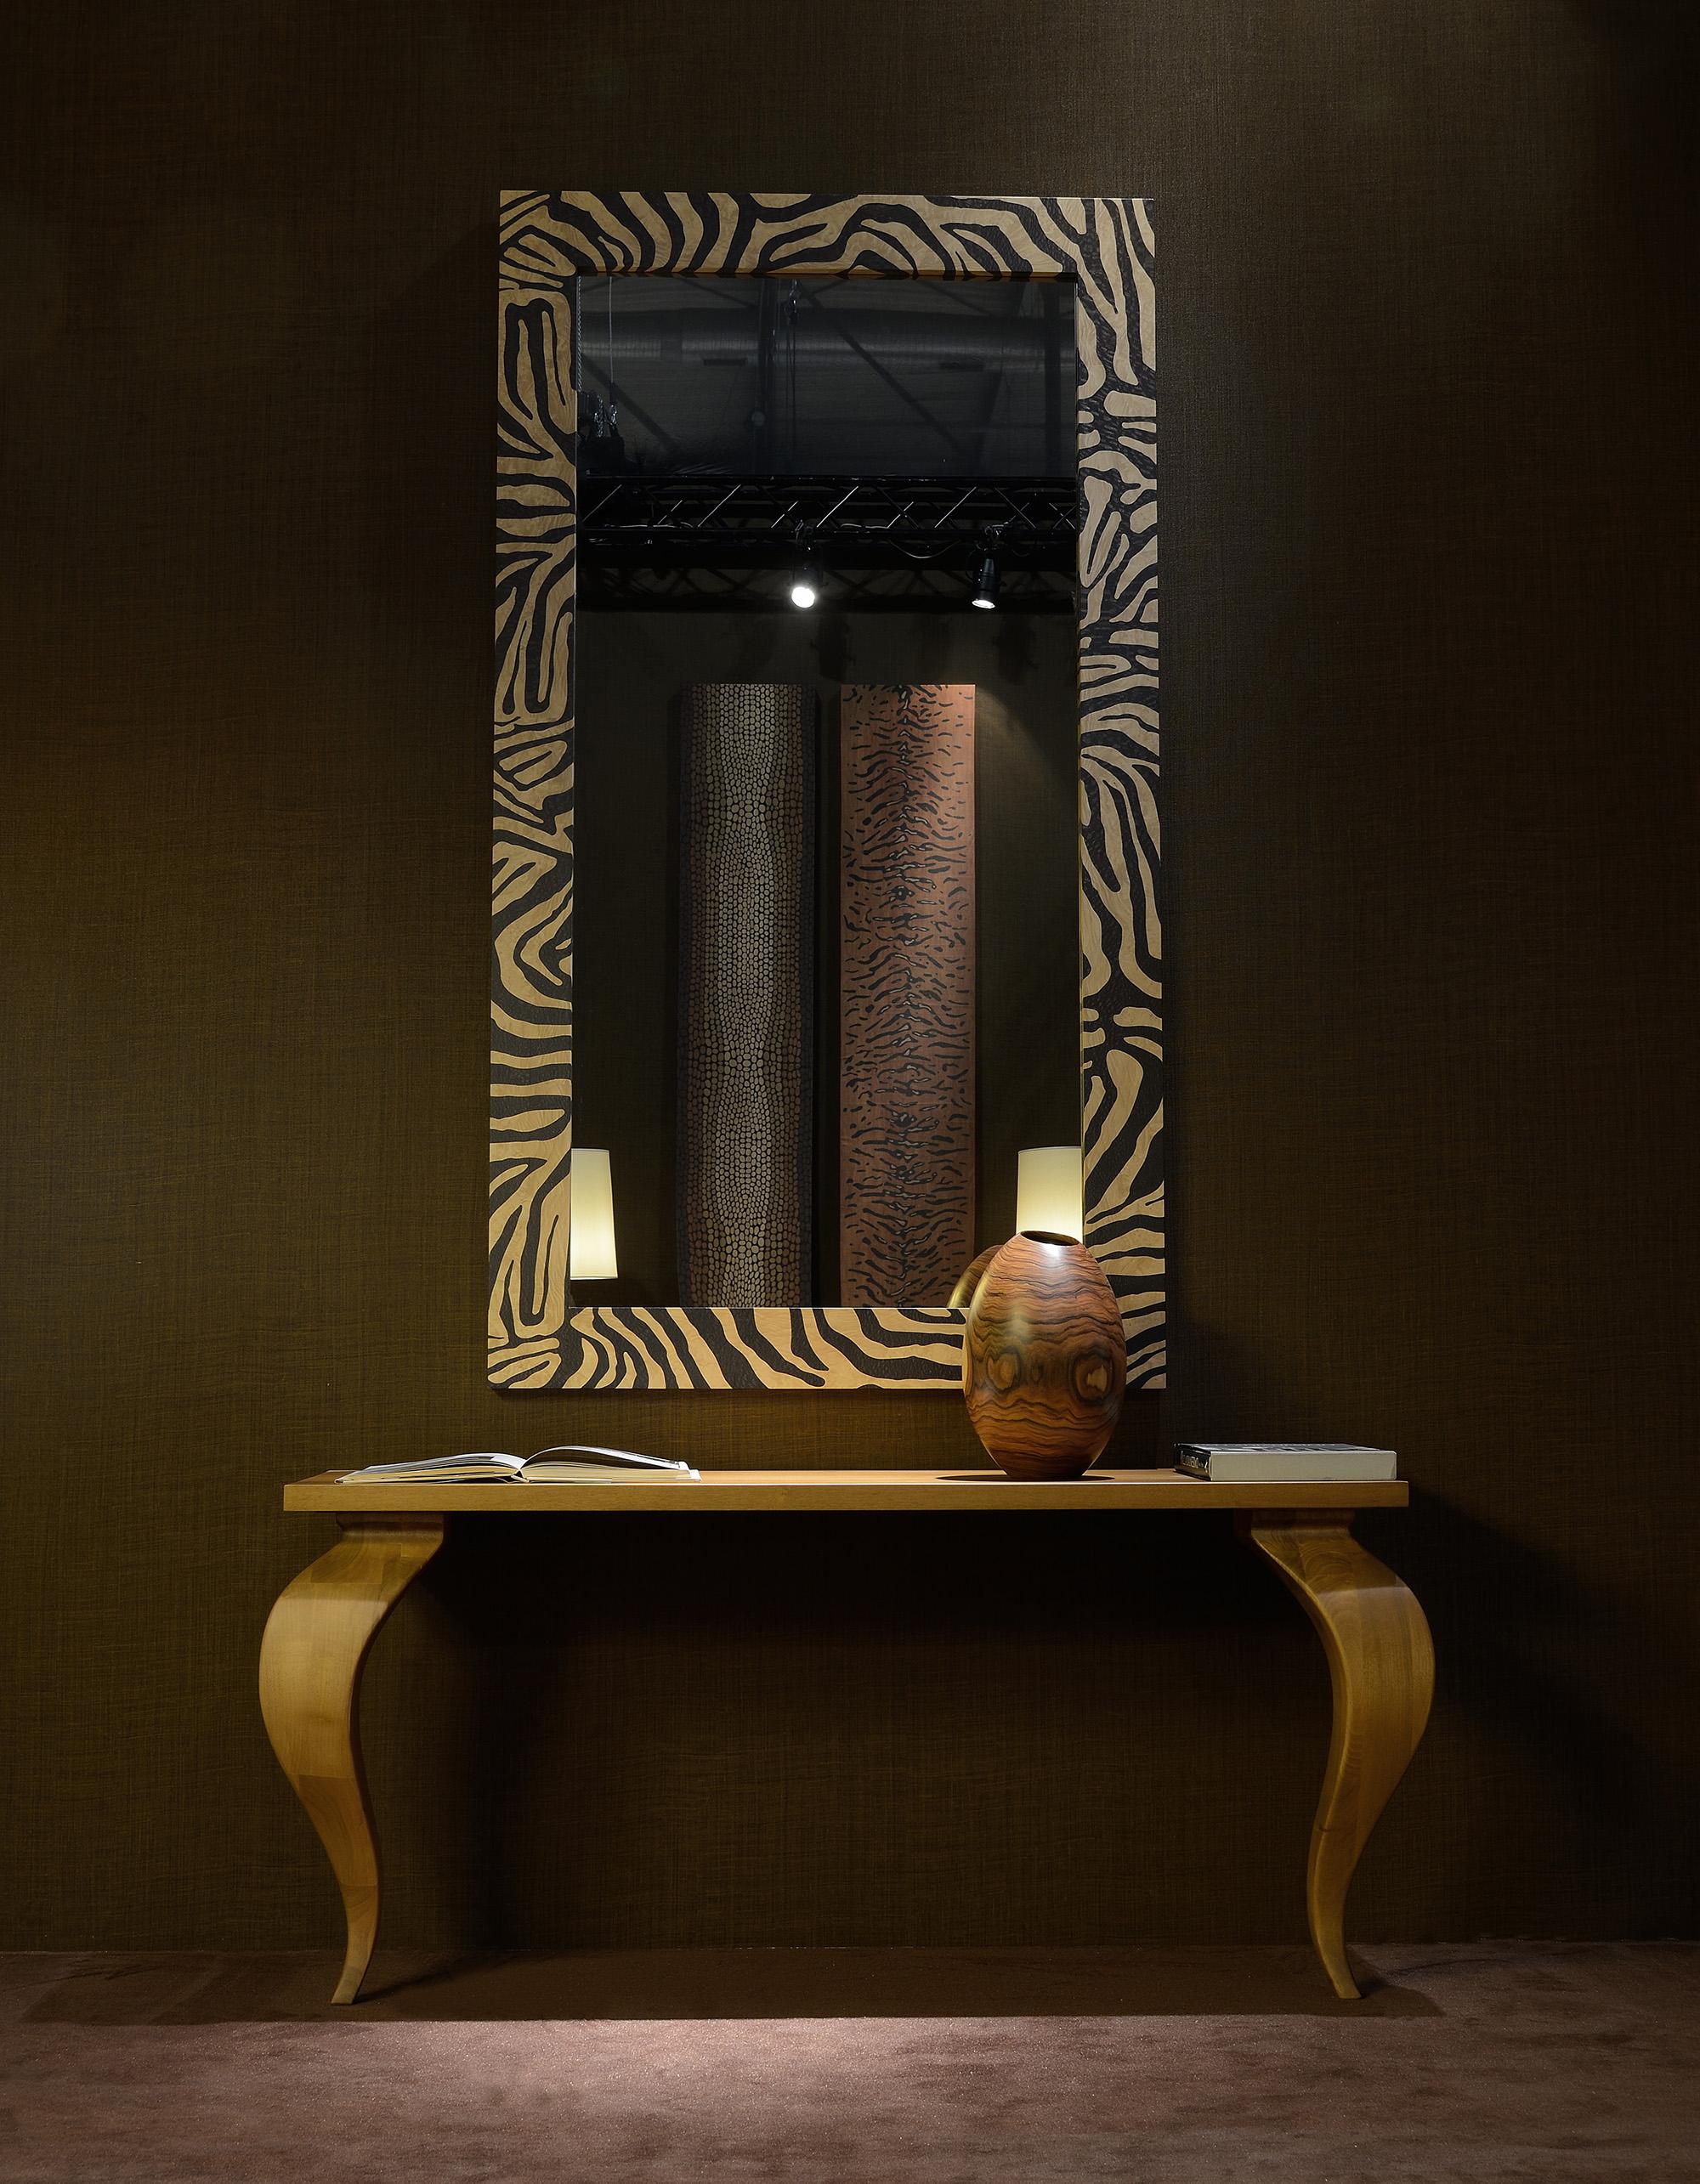 Der Rahmen dieses Spiegels ist aus Massivholz gefertigt und mit einer auffälligen Zebrastreifeneinlage versehen, die Ihrem Wohnbereich einen Hauch von Wildheit verleiht. Das Zebra-Finish hebt das filigrane Muster hervor und schafft ein Statement,